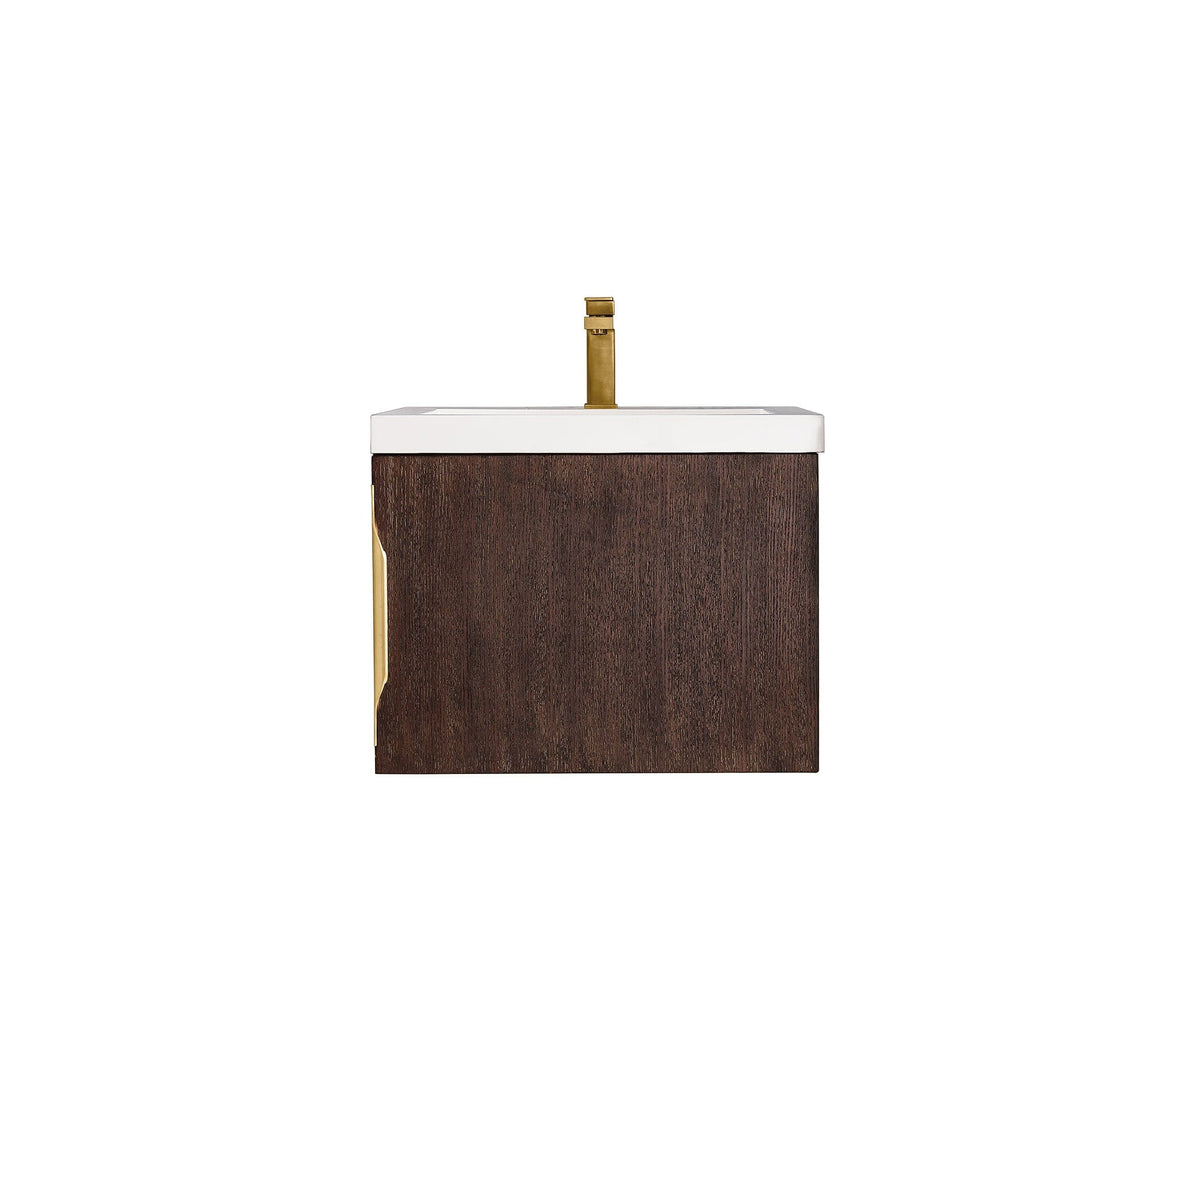 24" Columbia Single Wall Mounted Bathroom Vanity, Coffee Oak